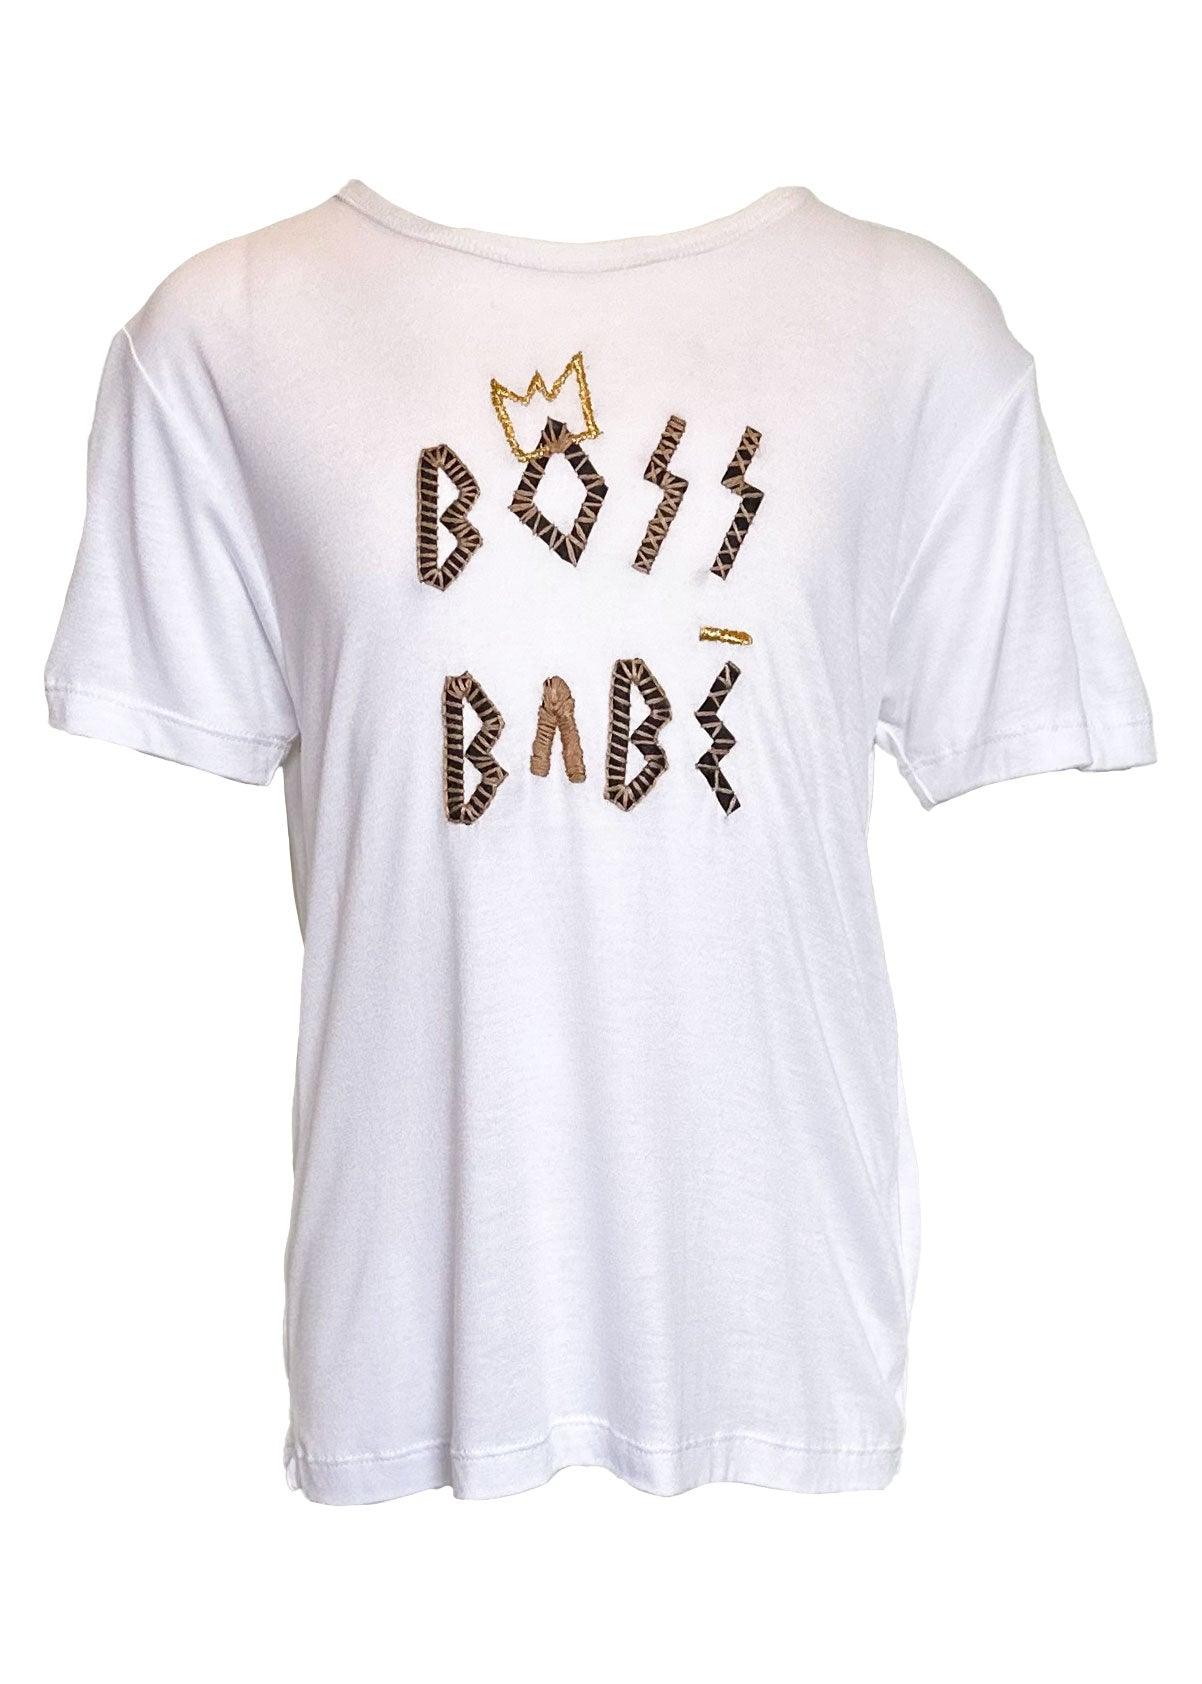 Boss Babe Kids Tee Shirt - Erika Peña